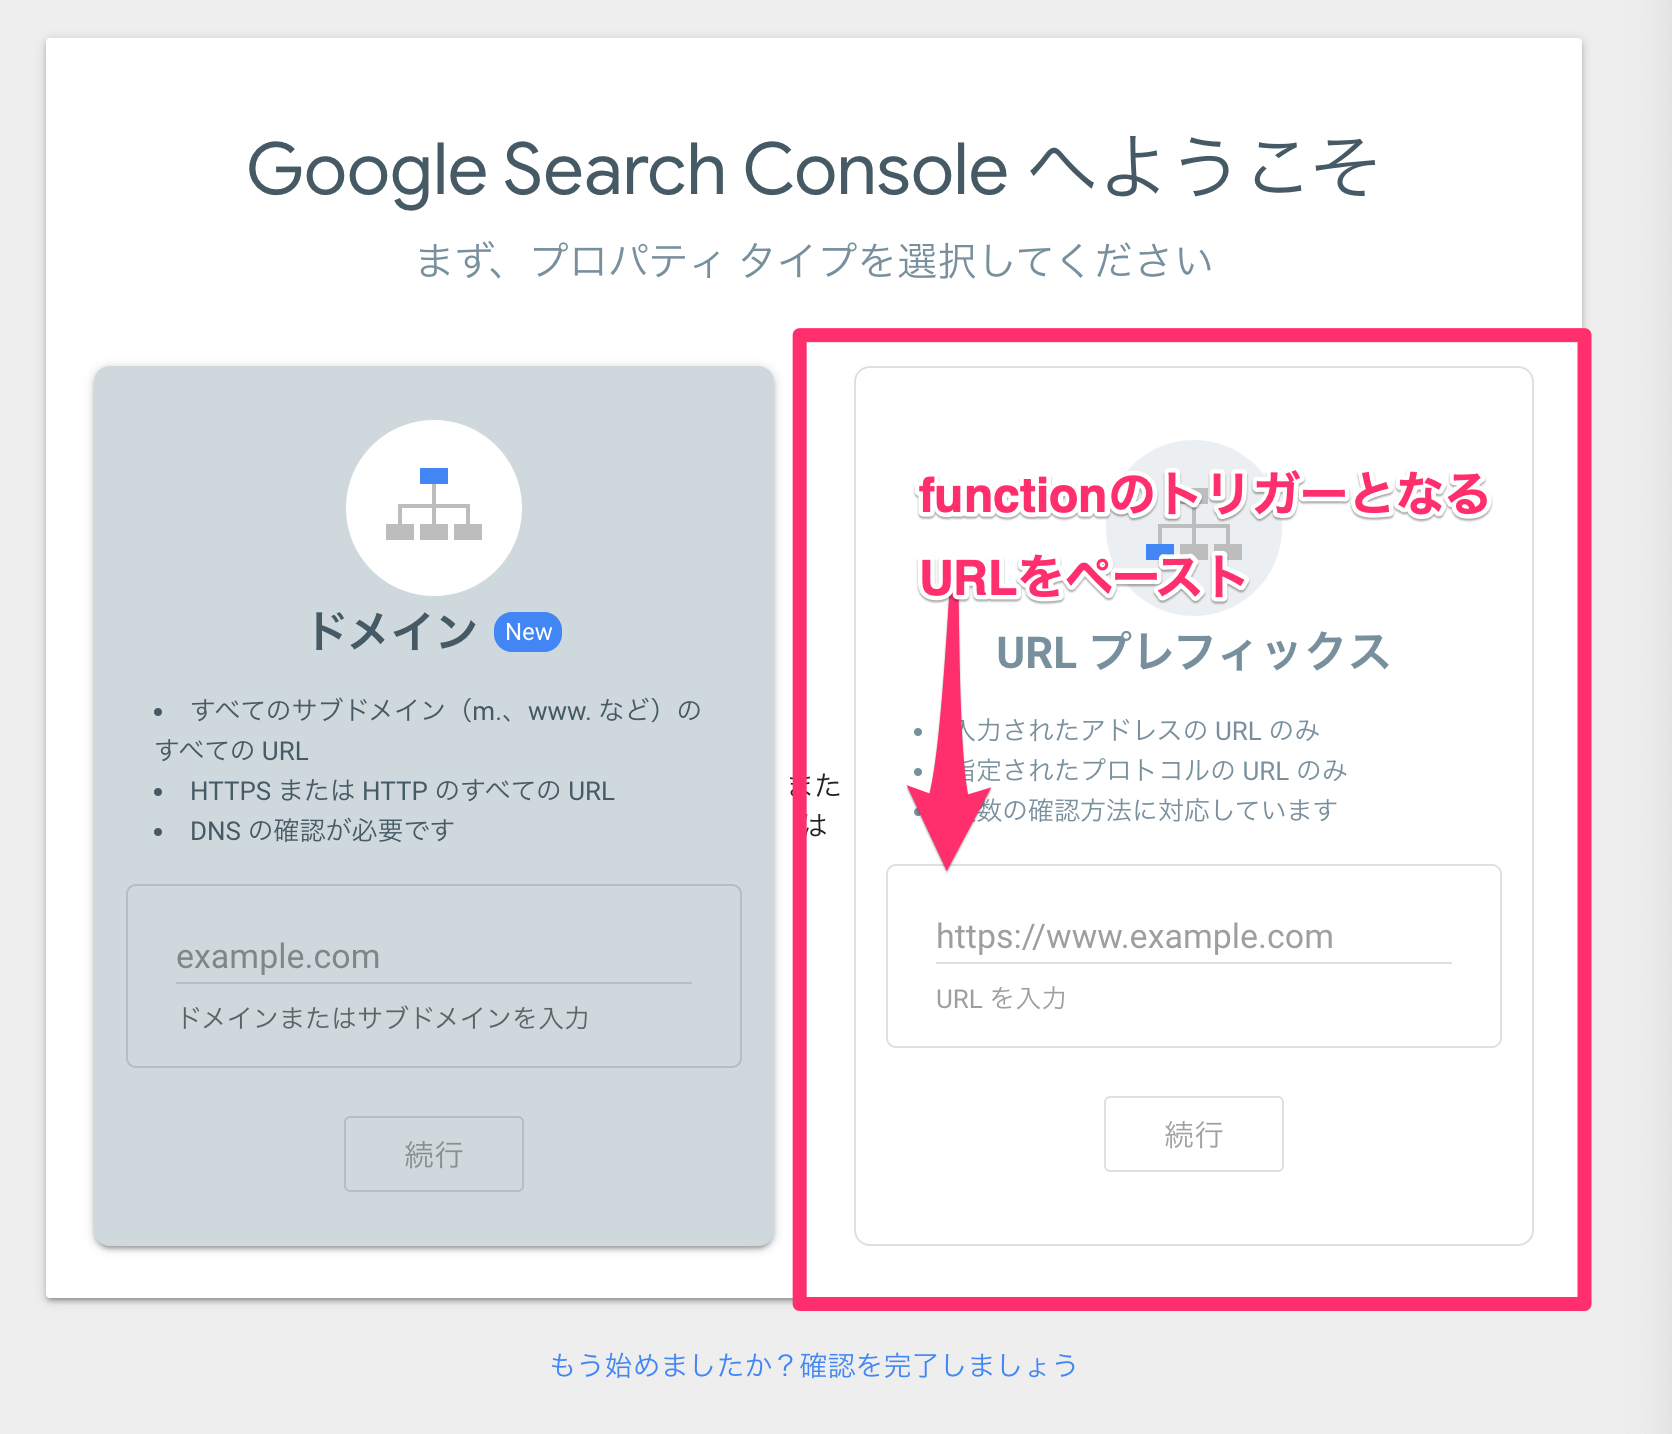 Google_Search_Console_へようこそ.png